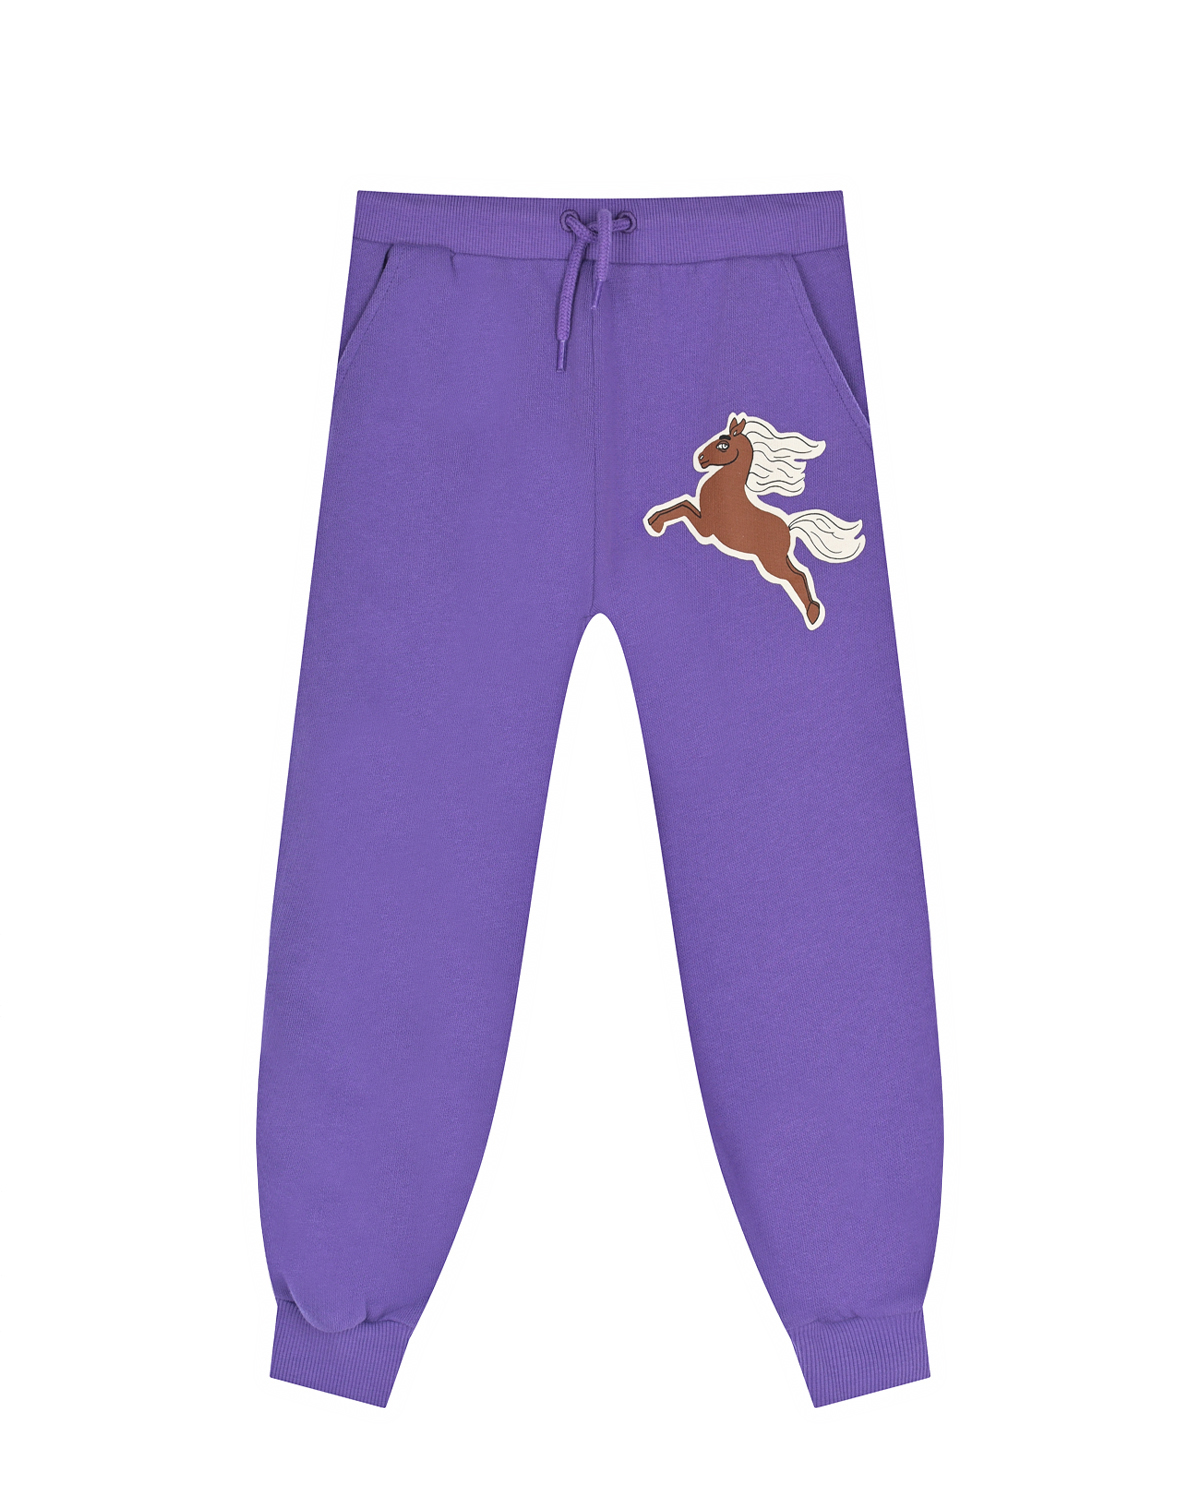 Фиолетовые брюки с принтом "лошадь" Mini Rodini детские, размер 92, цвет фиолетовый - фото 1